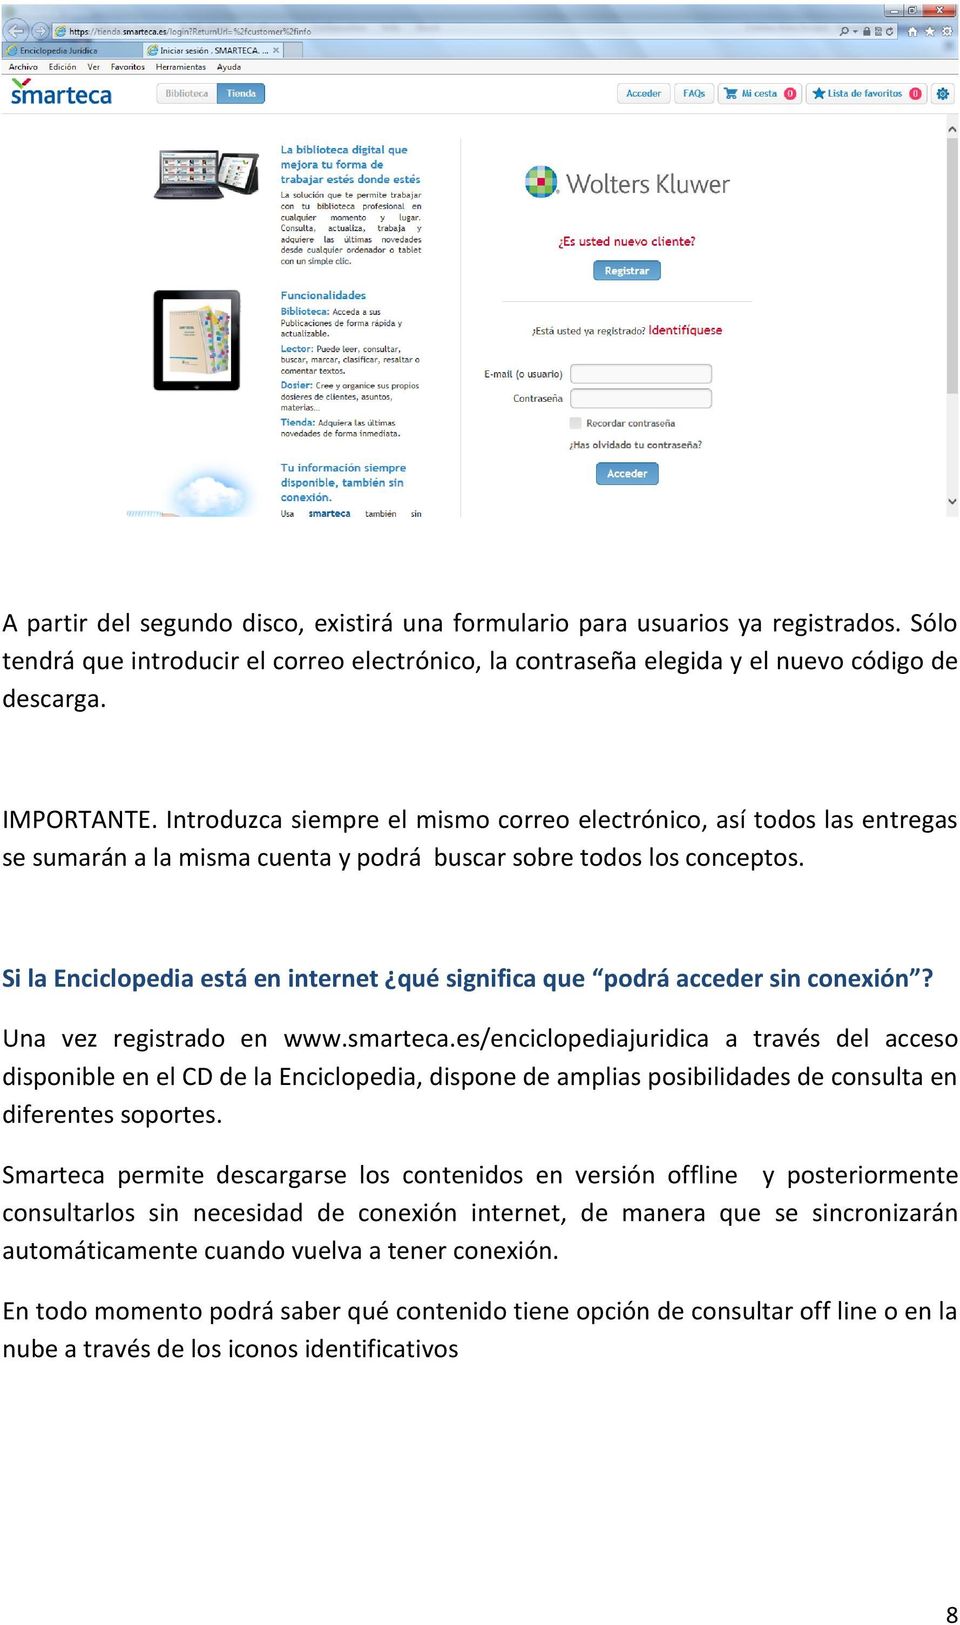 Si la Enciclopedia está en internet qué significa que podrá acceder sin conexión? Una vez registrado en www.smarteca.